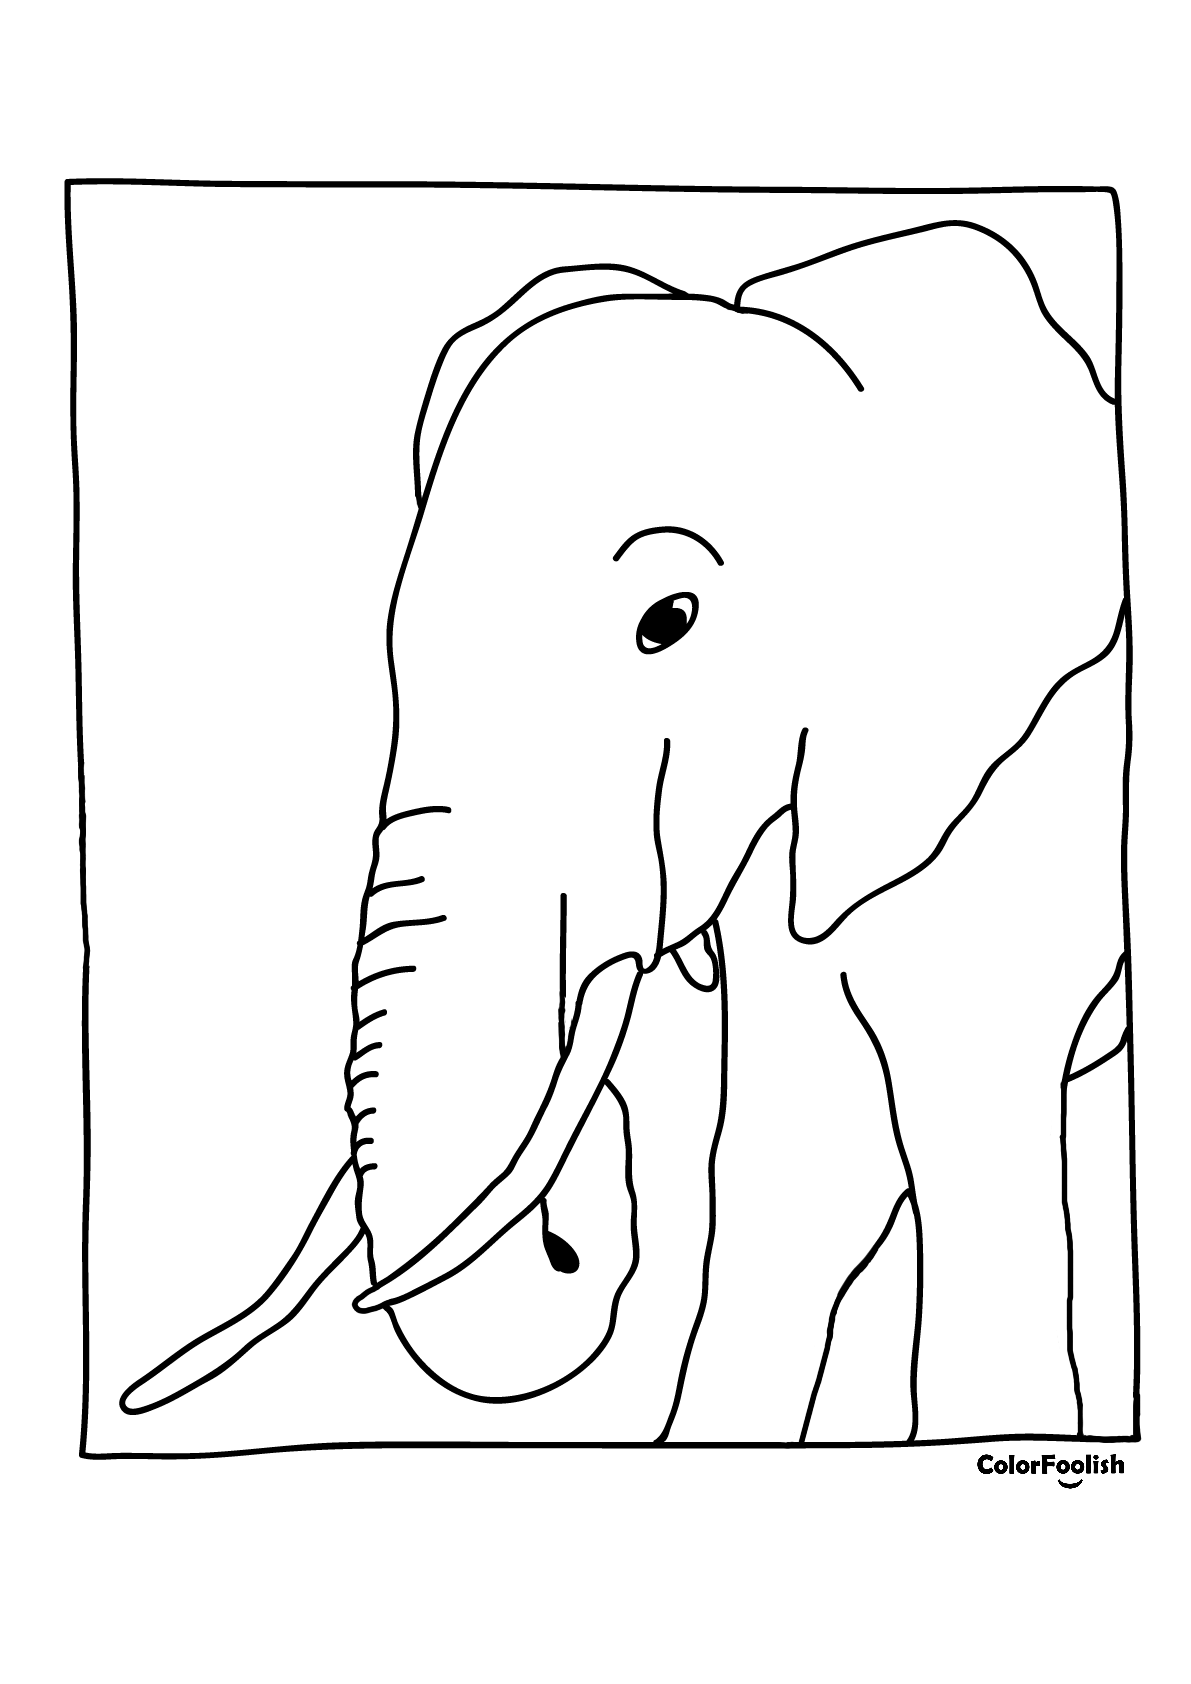 Страница за бојење слона који једе